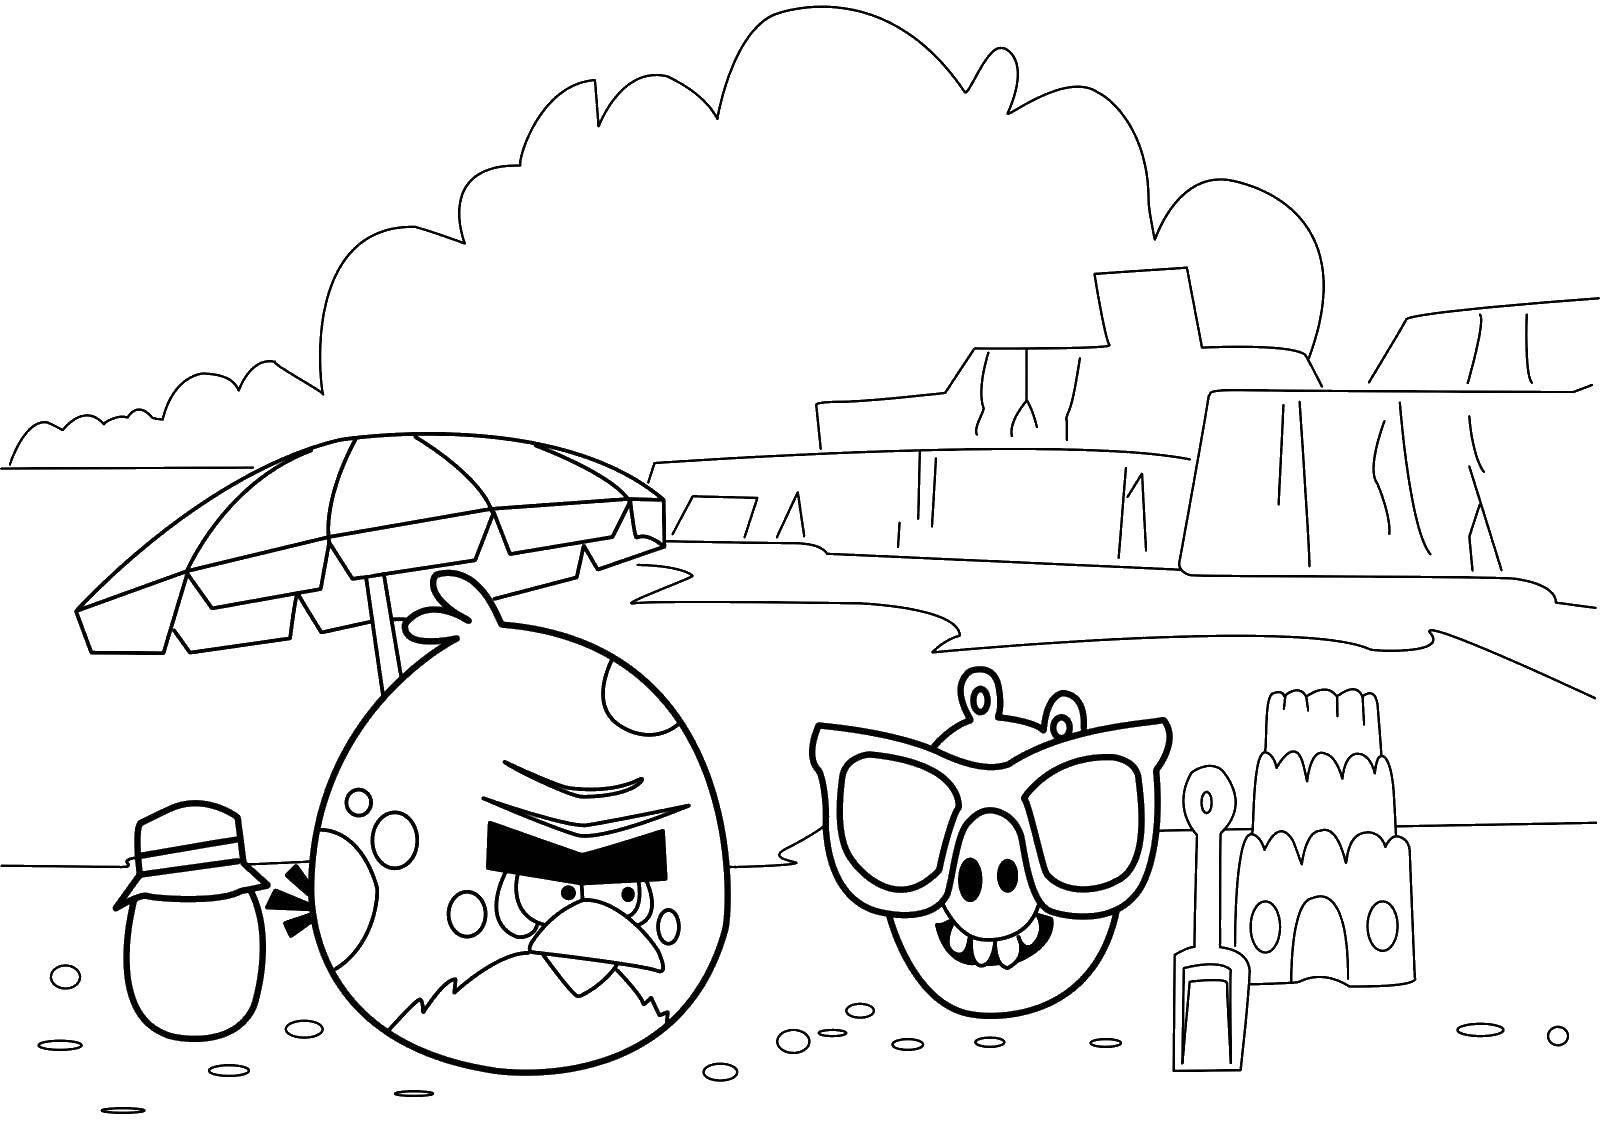 Опис: розмальовки  Пташка і свинка на пляжі. Категорія: angry birds. Теги:  Гри, Angry Birds .